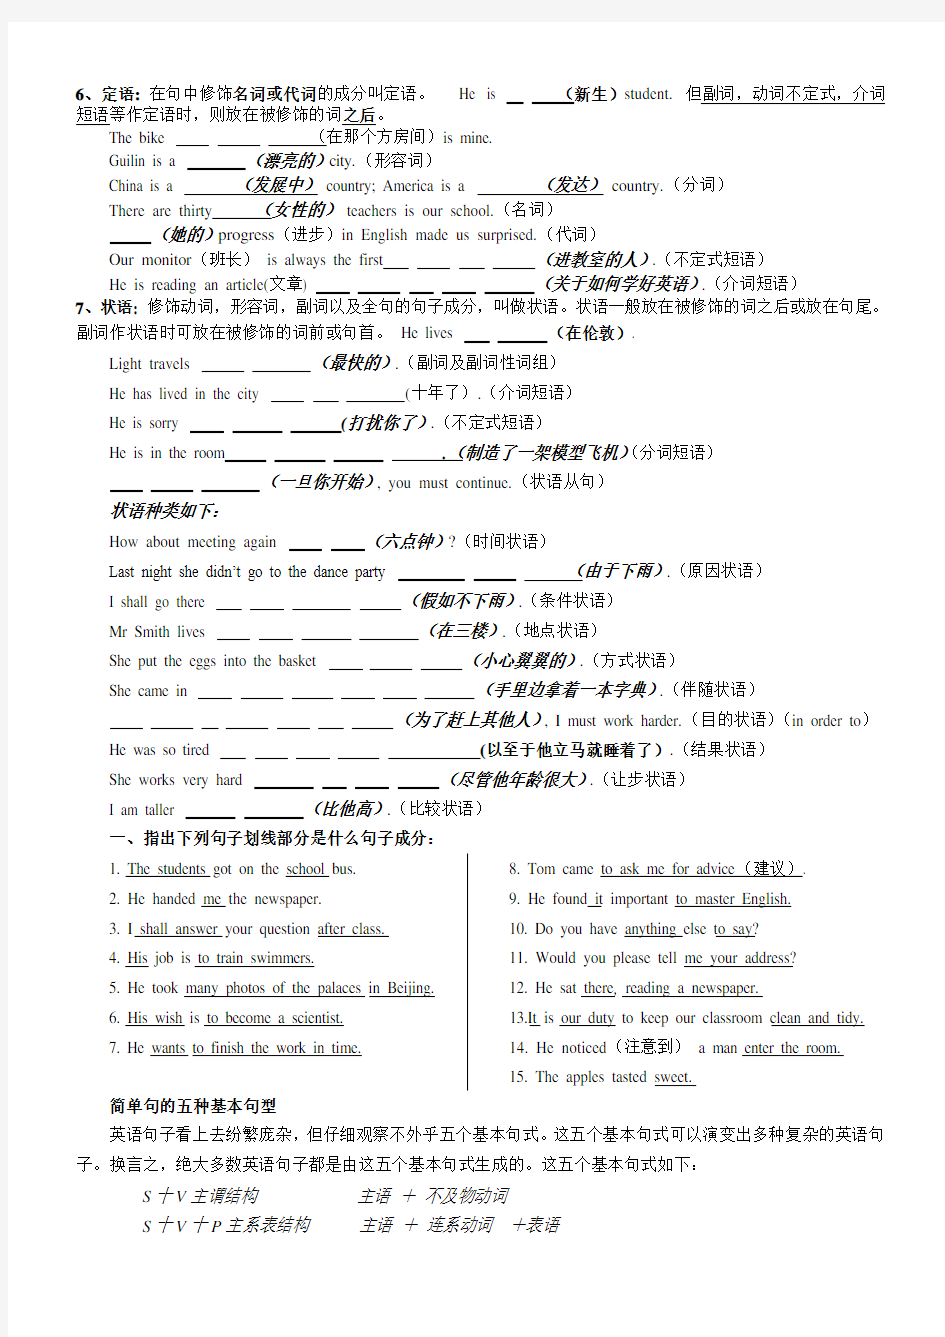 华为英语简单句的五种基本句型SVO讲解练习打印版学生用